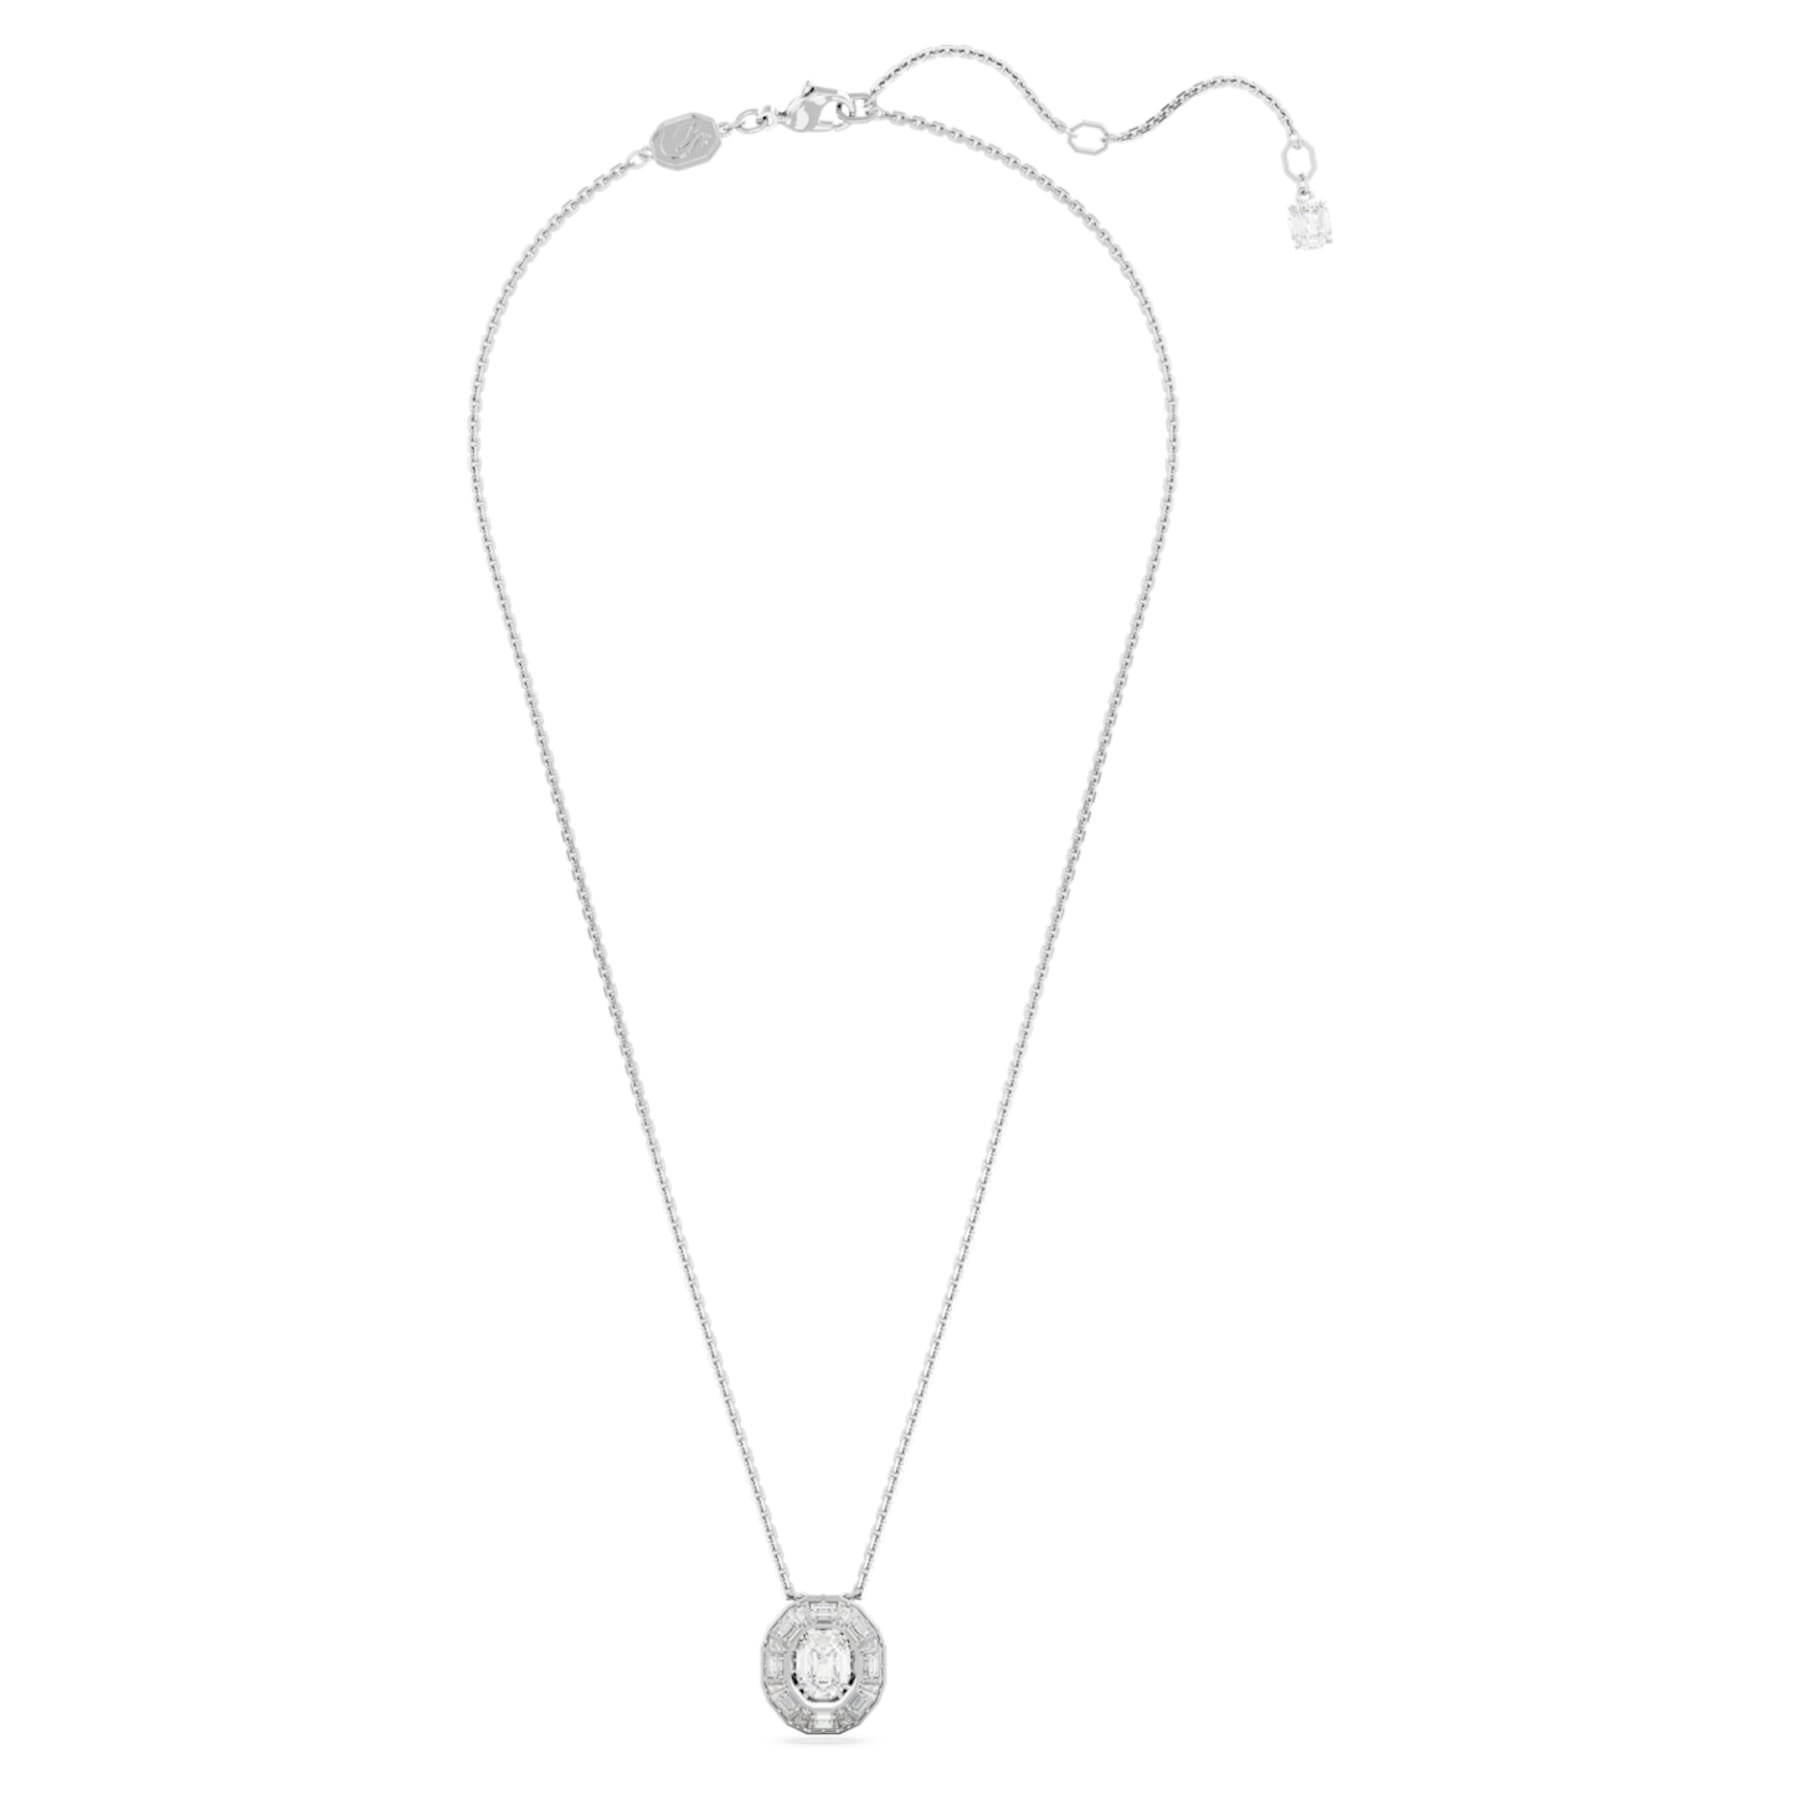 Mesmera - White Silver - Necklace - Swarovski